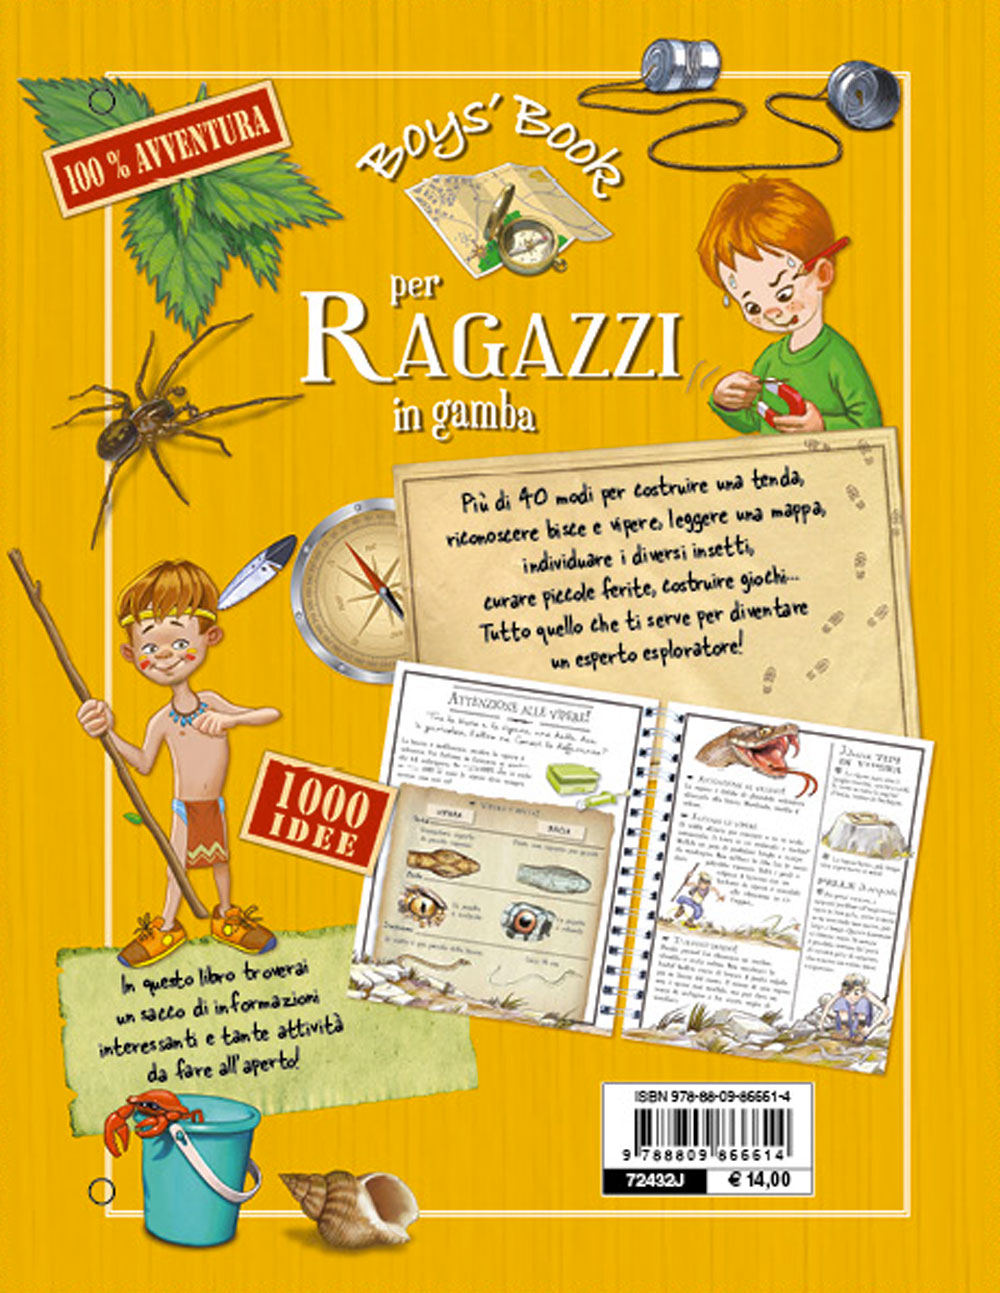 Boys' Book per Ragazzi in gamba::Tutto quello che devi sapere per vivere l'avventura! 1000 idee per esploratori curiosi!